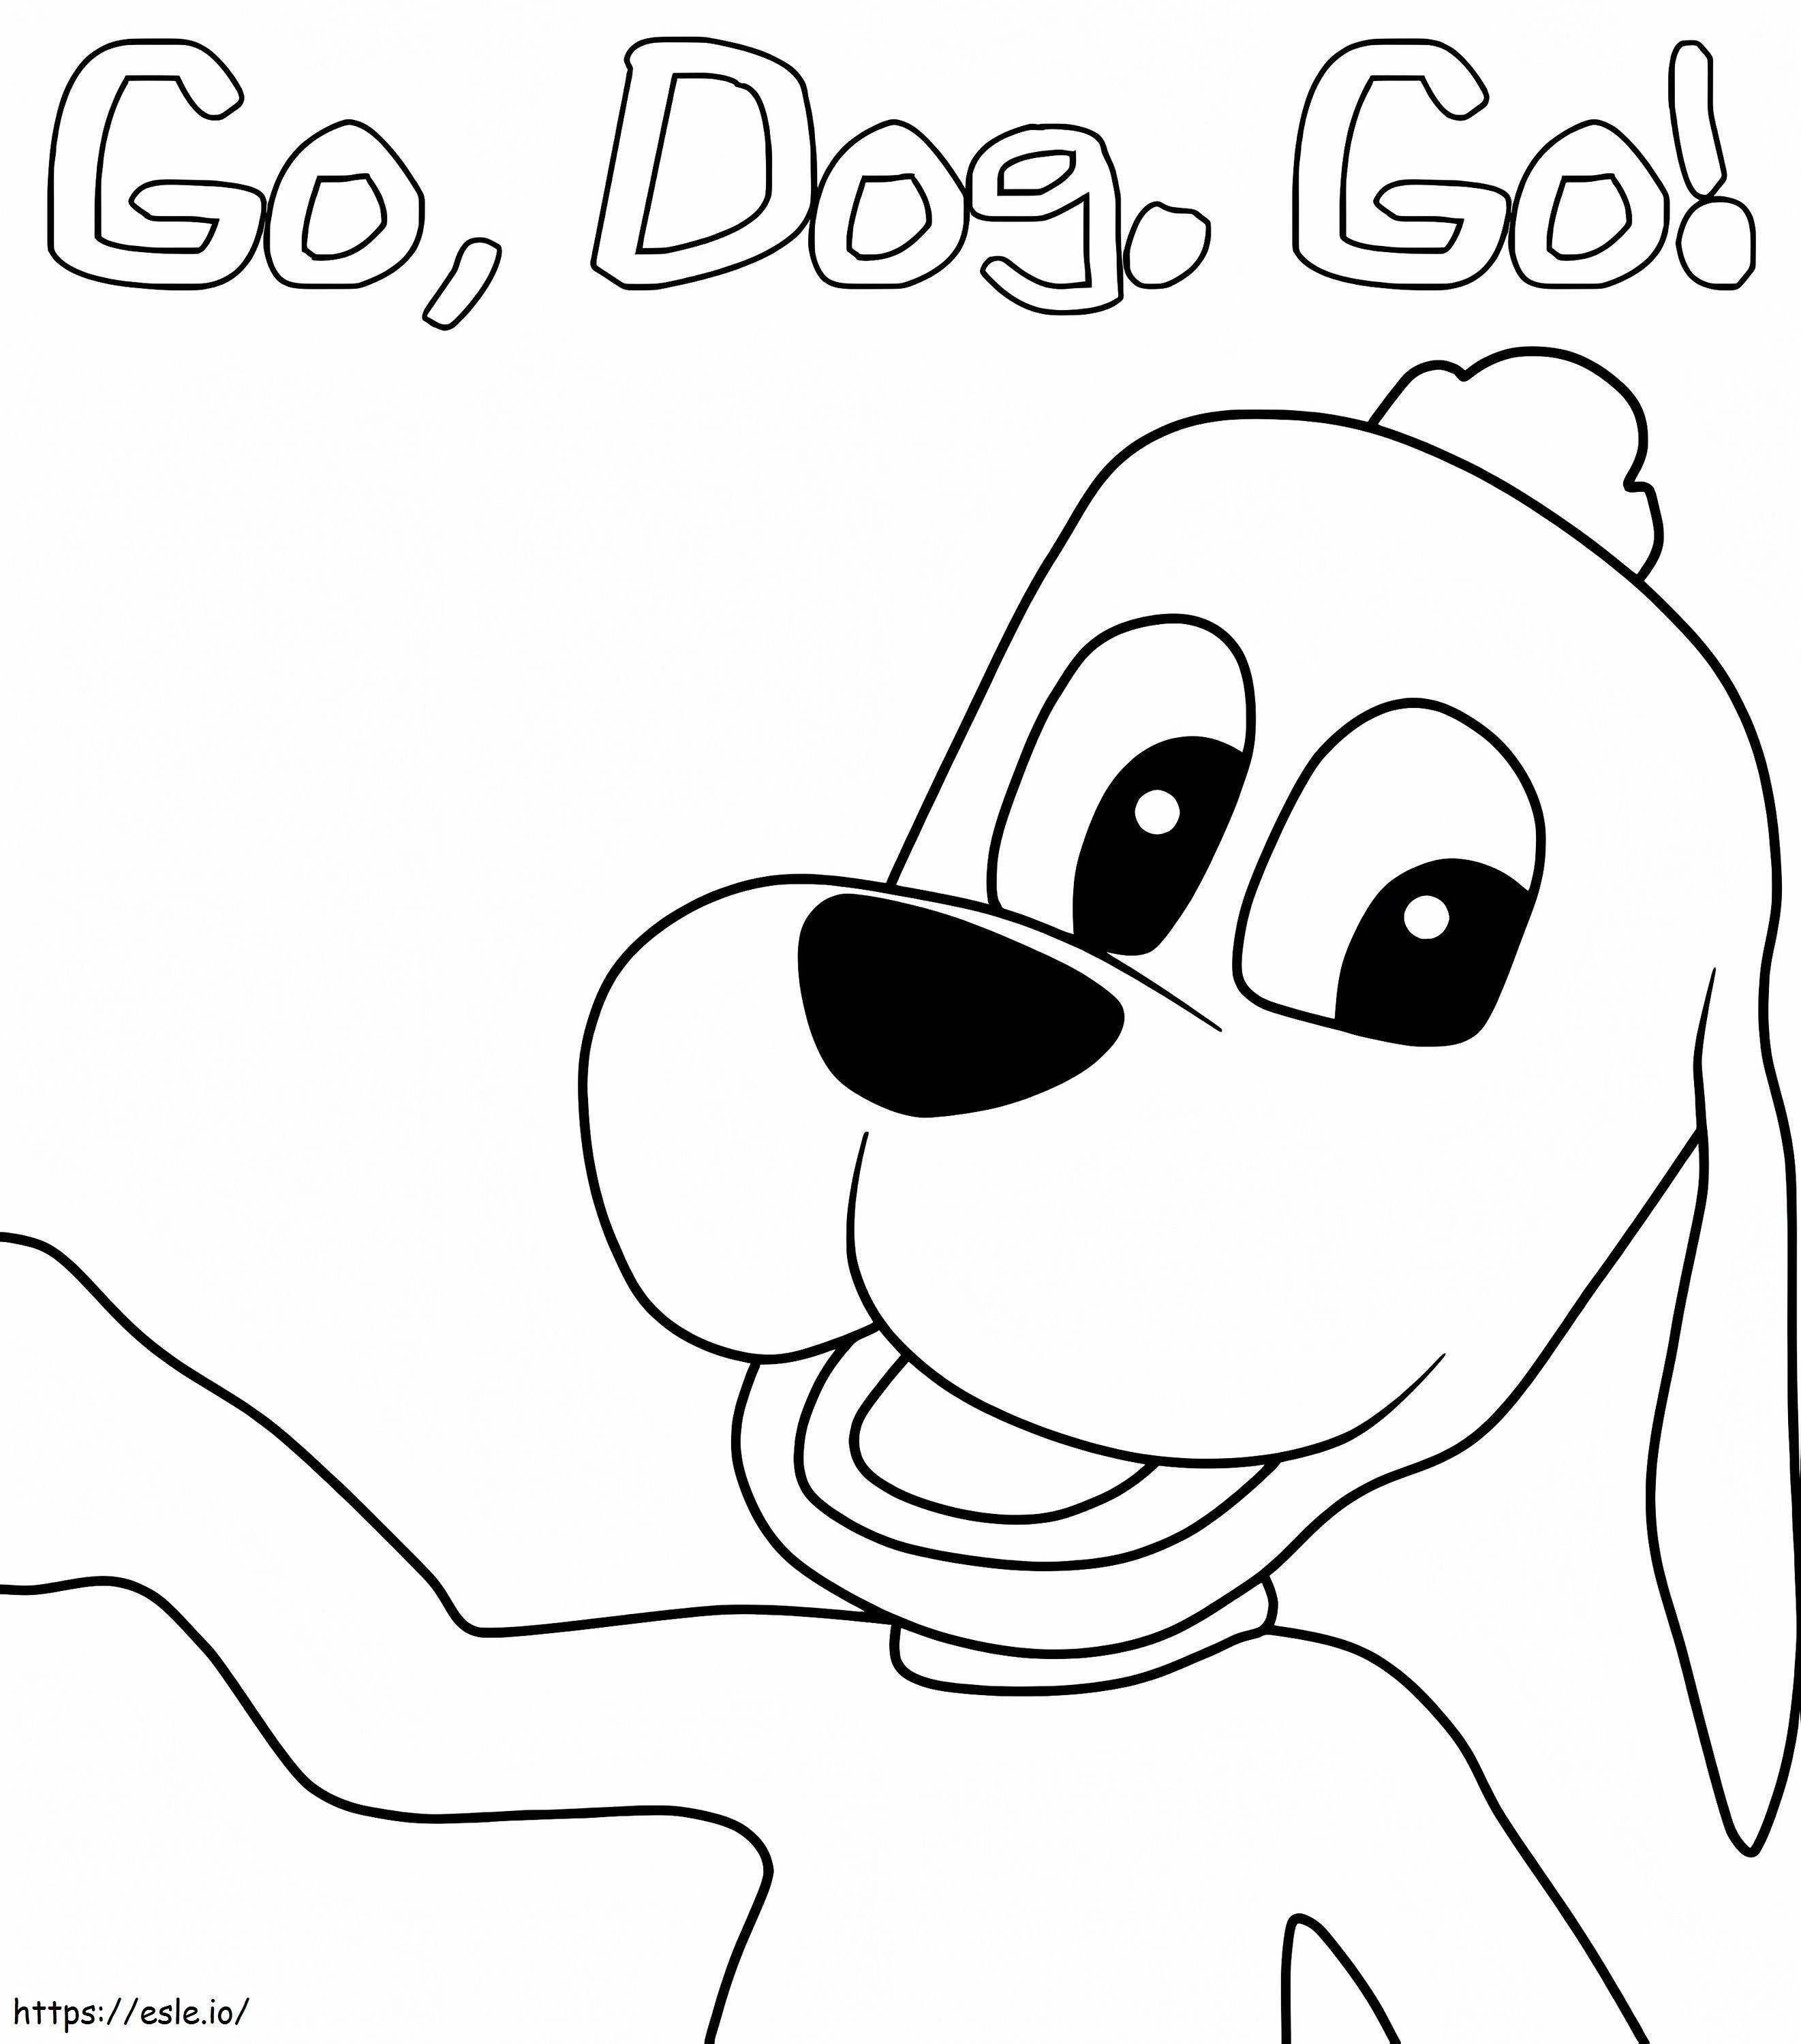 Tag Barker van Go Dog Go kleurplaat kleurplaat